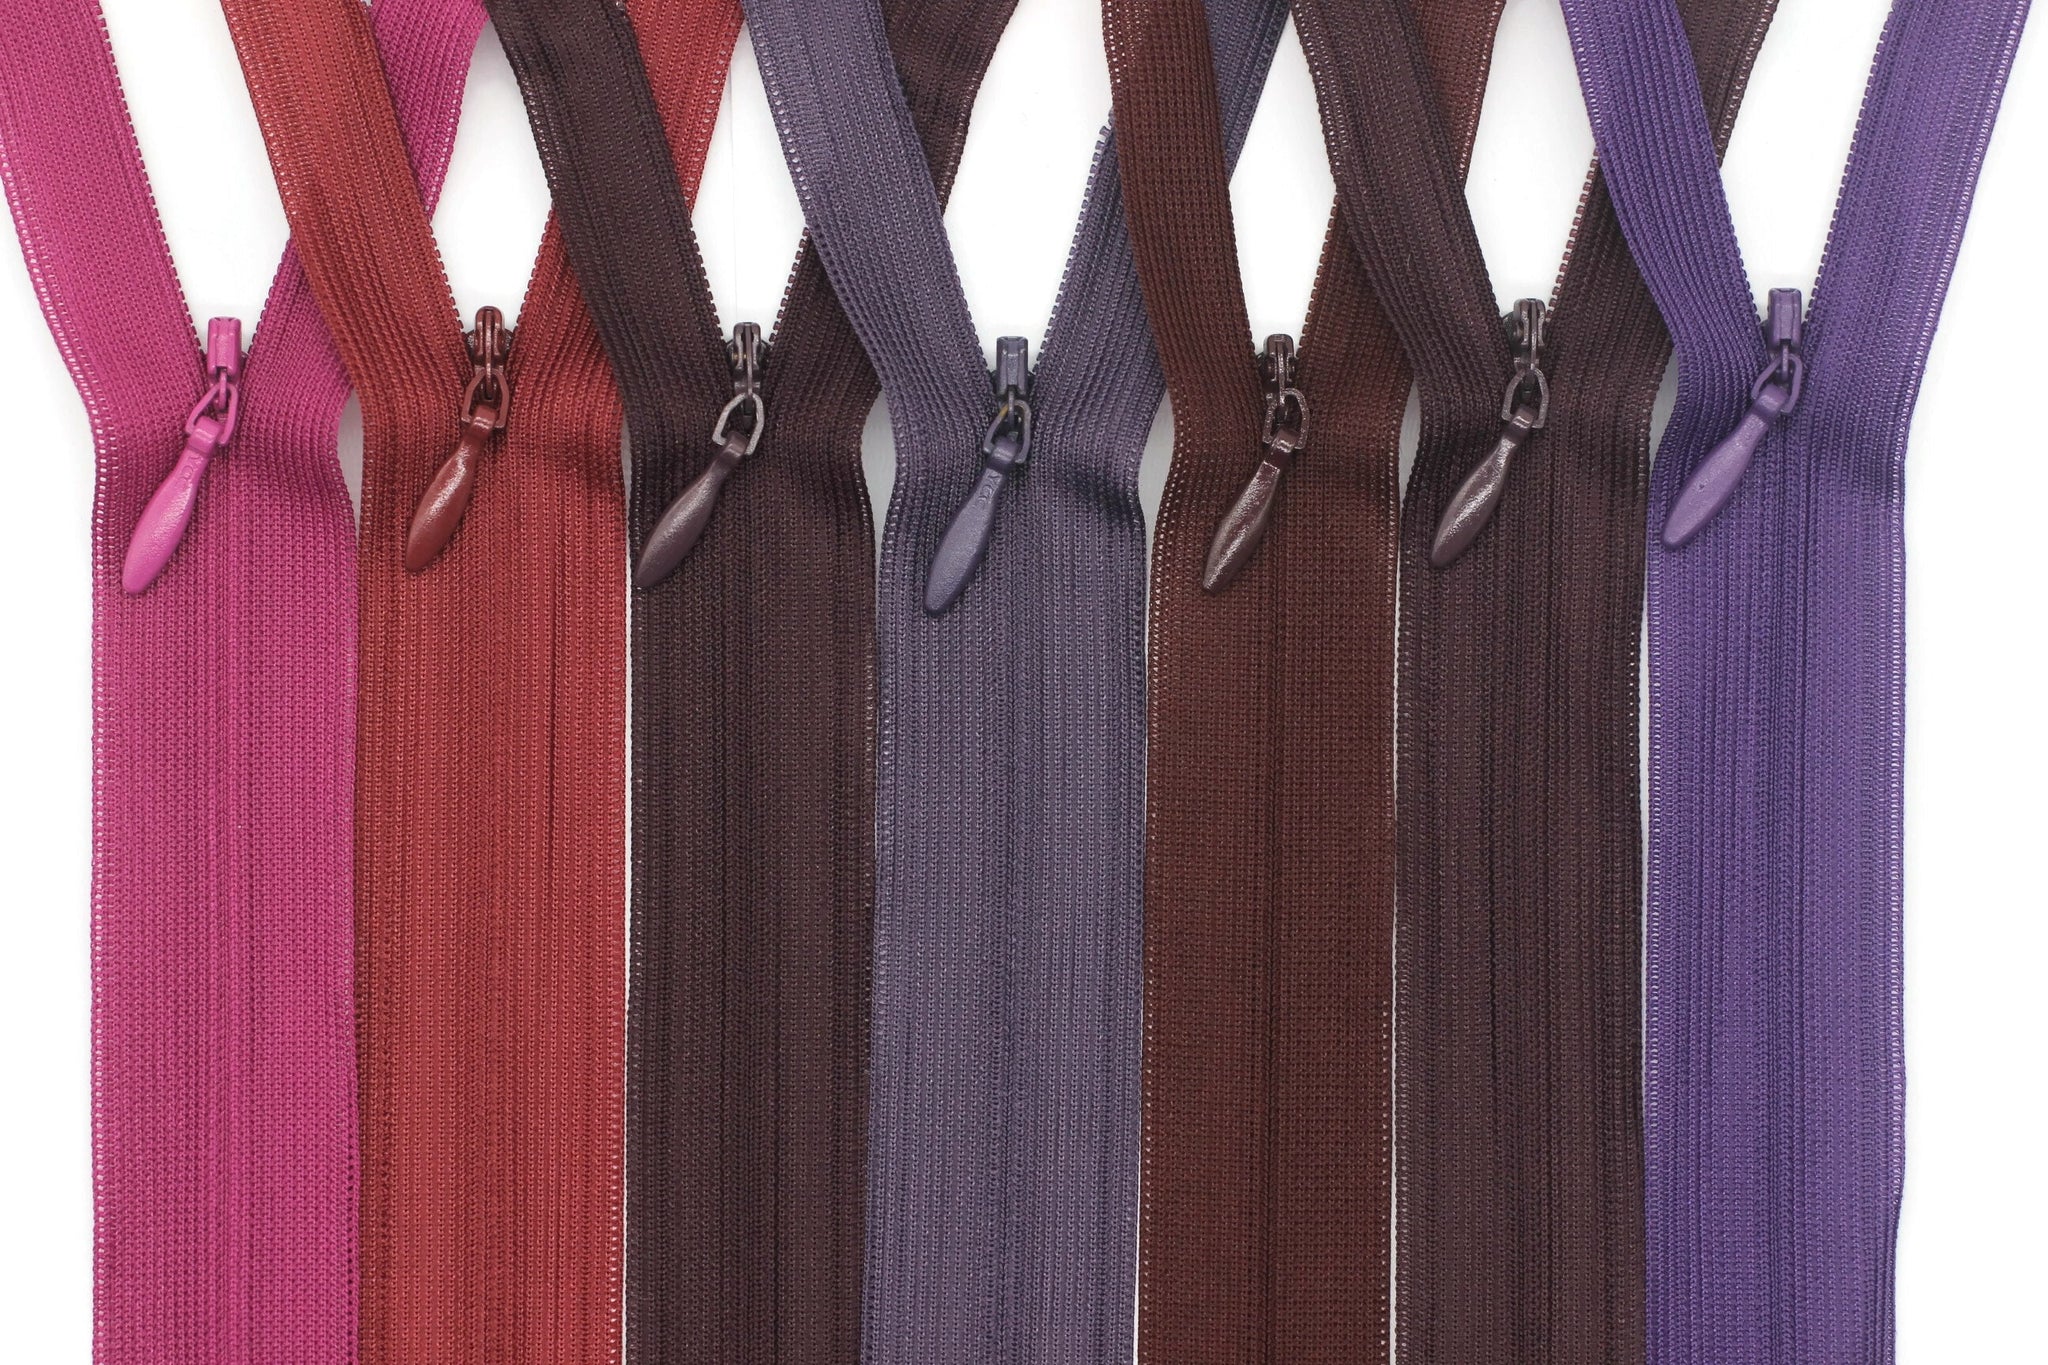 Skirt Zippers, 35 cm (14 inches) Zipper, Dress Zipper, Concealed Zippers, Hide Zipper, Secret Zipper,Invisible Zippers, Colorfull Zippers